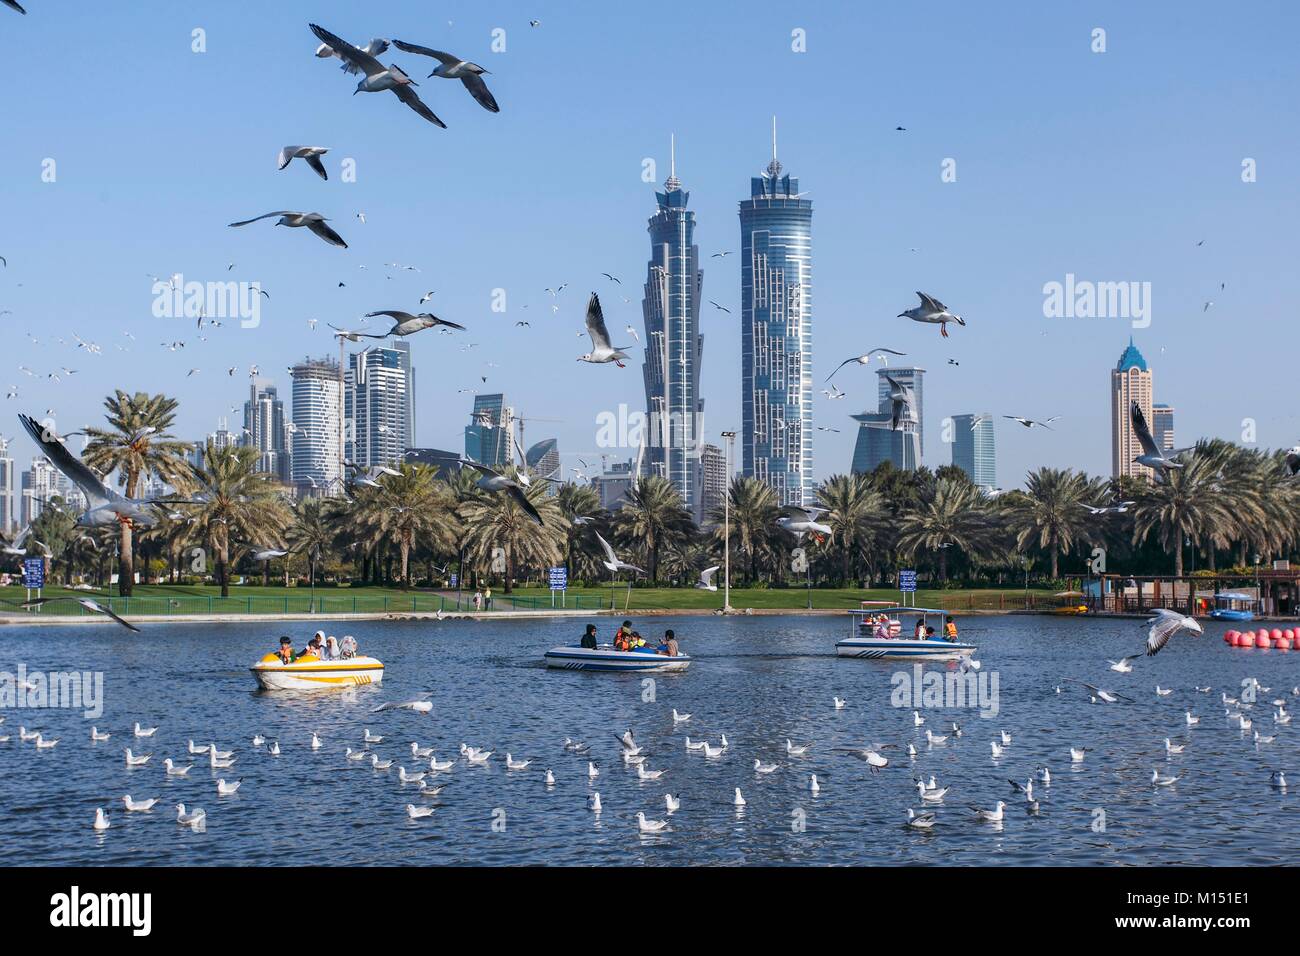 Emirats arabes unis, dubaï, Business Bay area avec Burj Khalifa sur le côté gauche, avec Safa Park au premier plan Banque D'Images